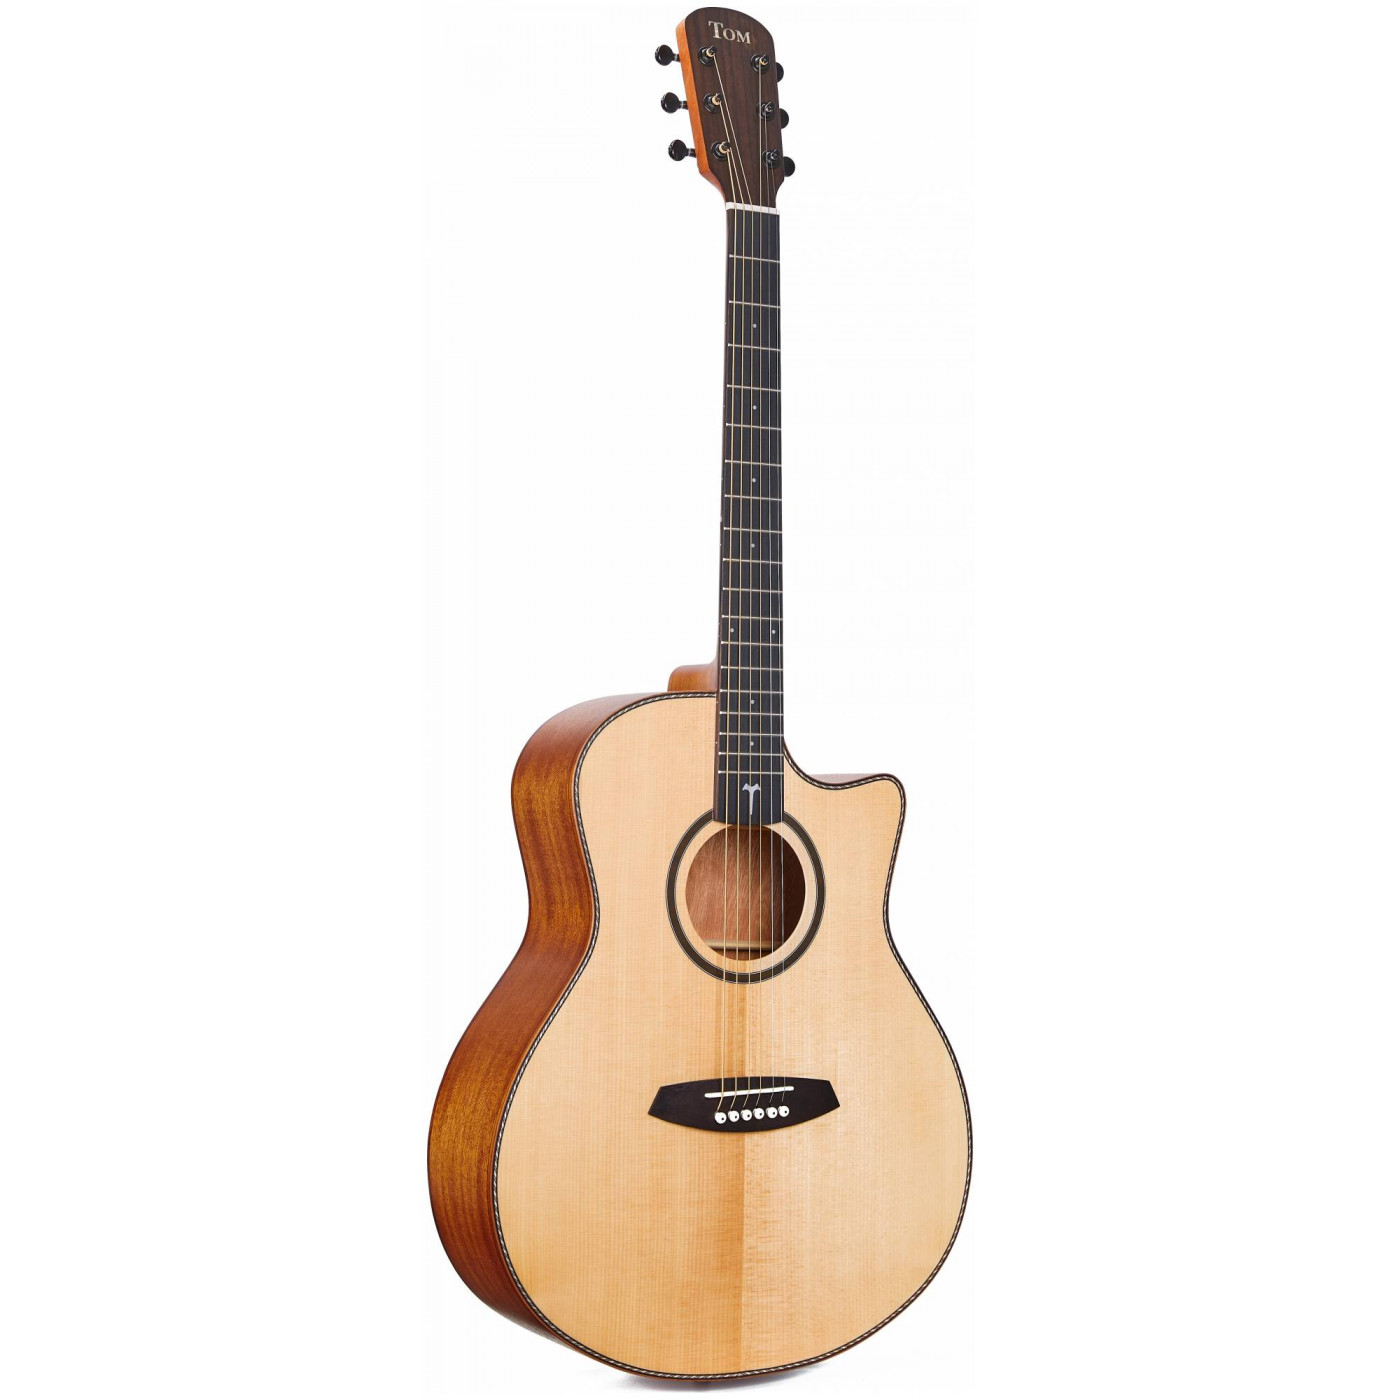 Акустические гитары TOM GA-T1M акустическая гитара с вырезом 95 см